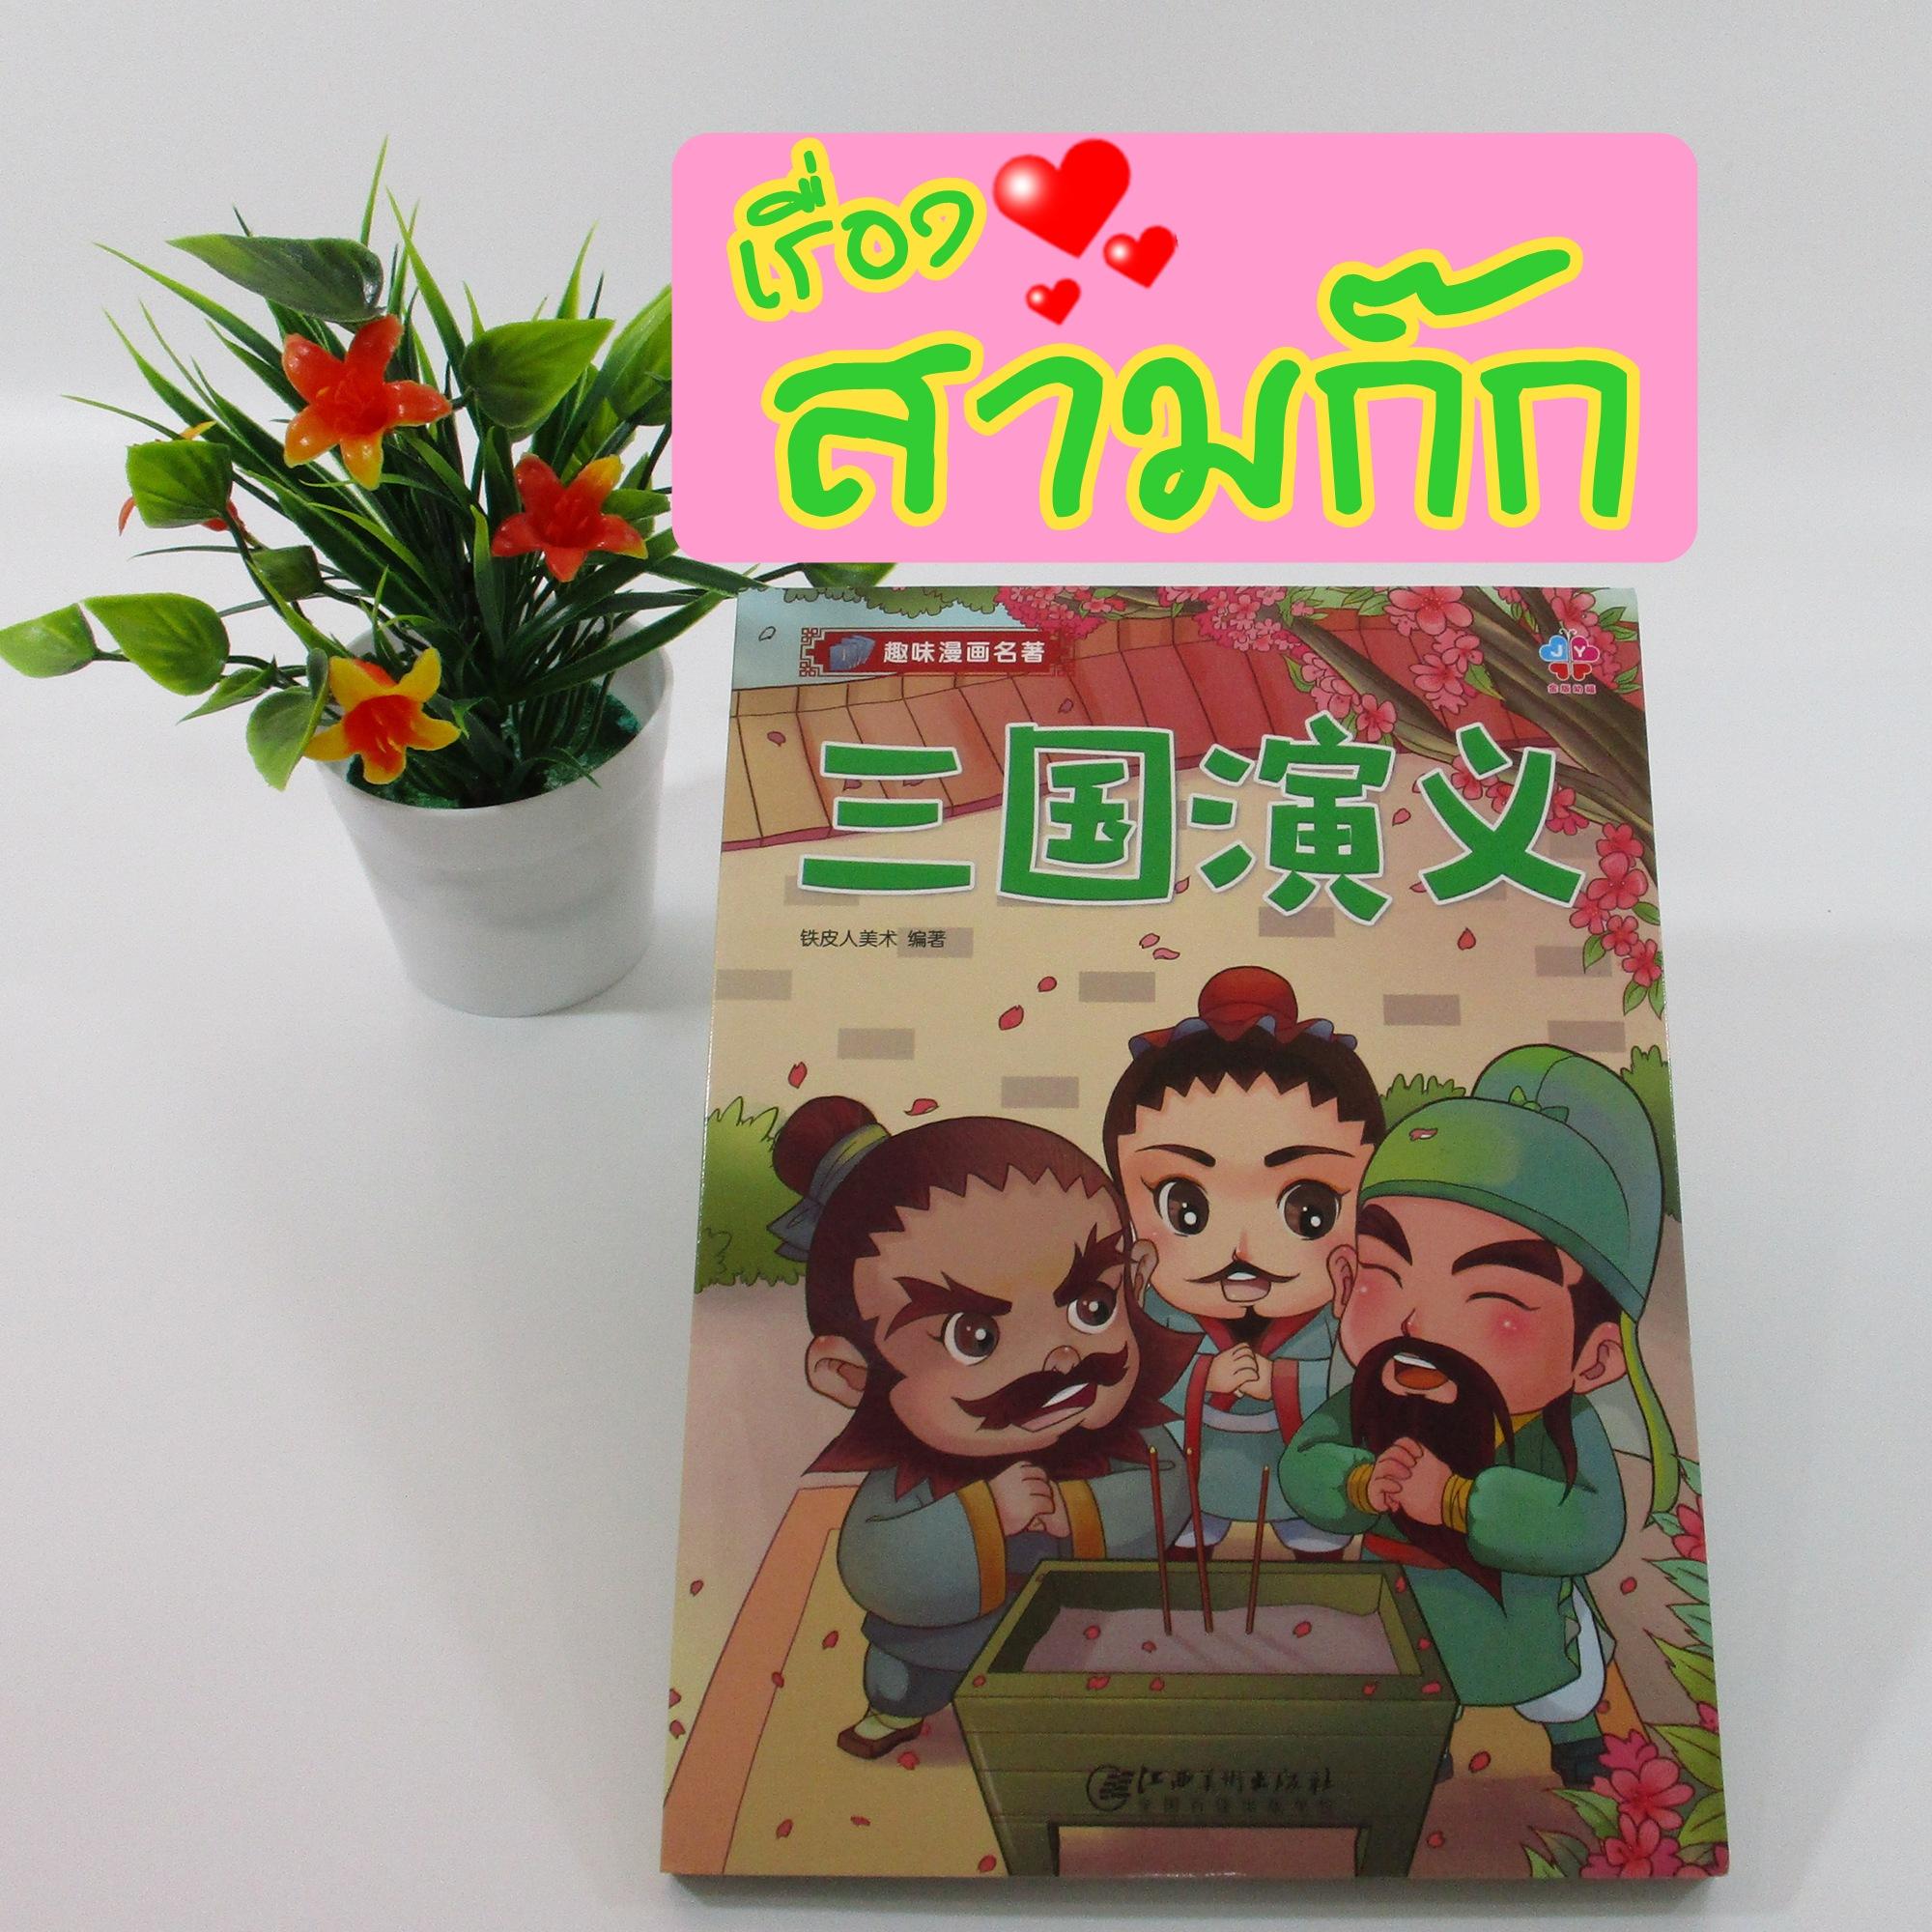 หนังสืออ่านนอกเวลาภาษาจีน เรื่อง สามก๊ก